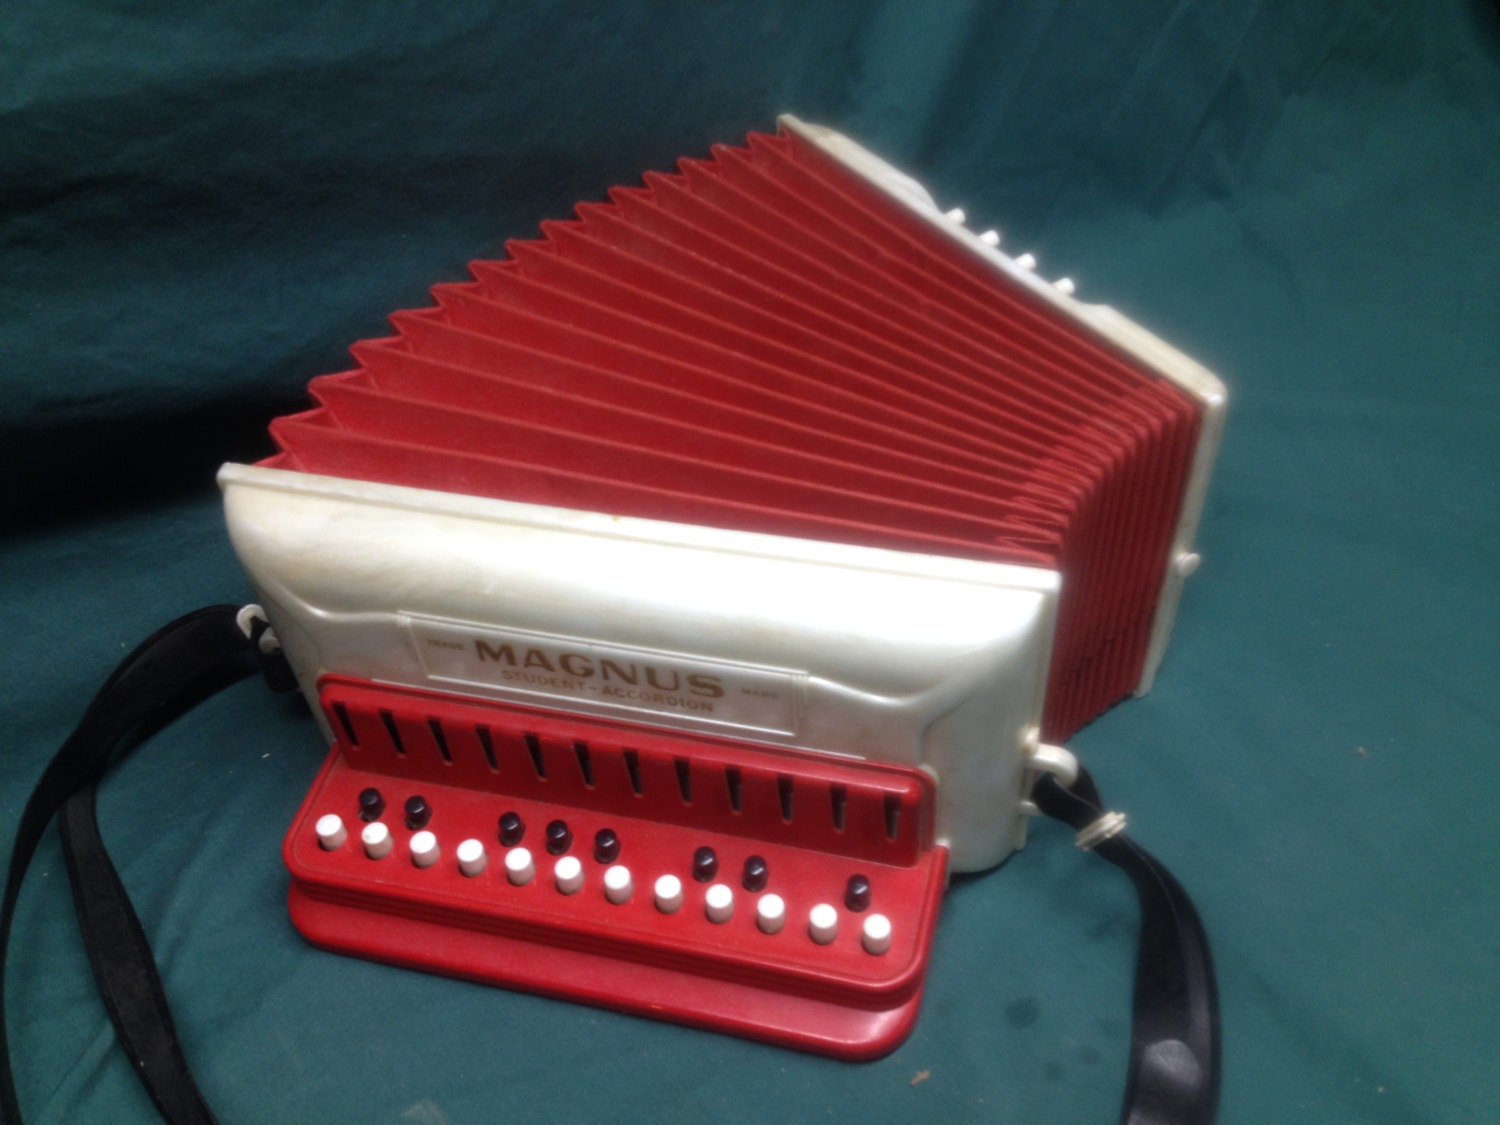 accordion toy